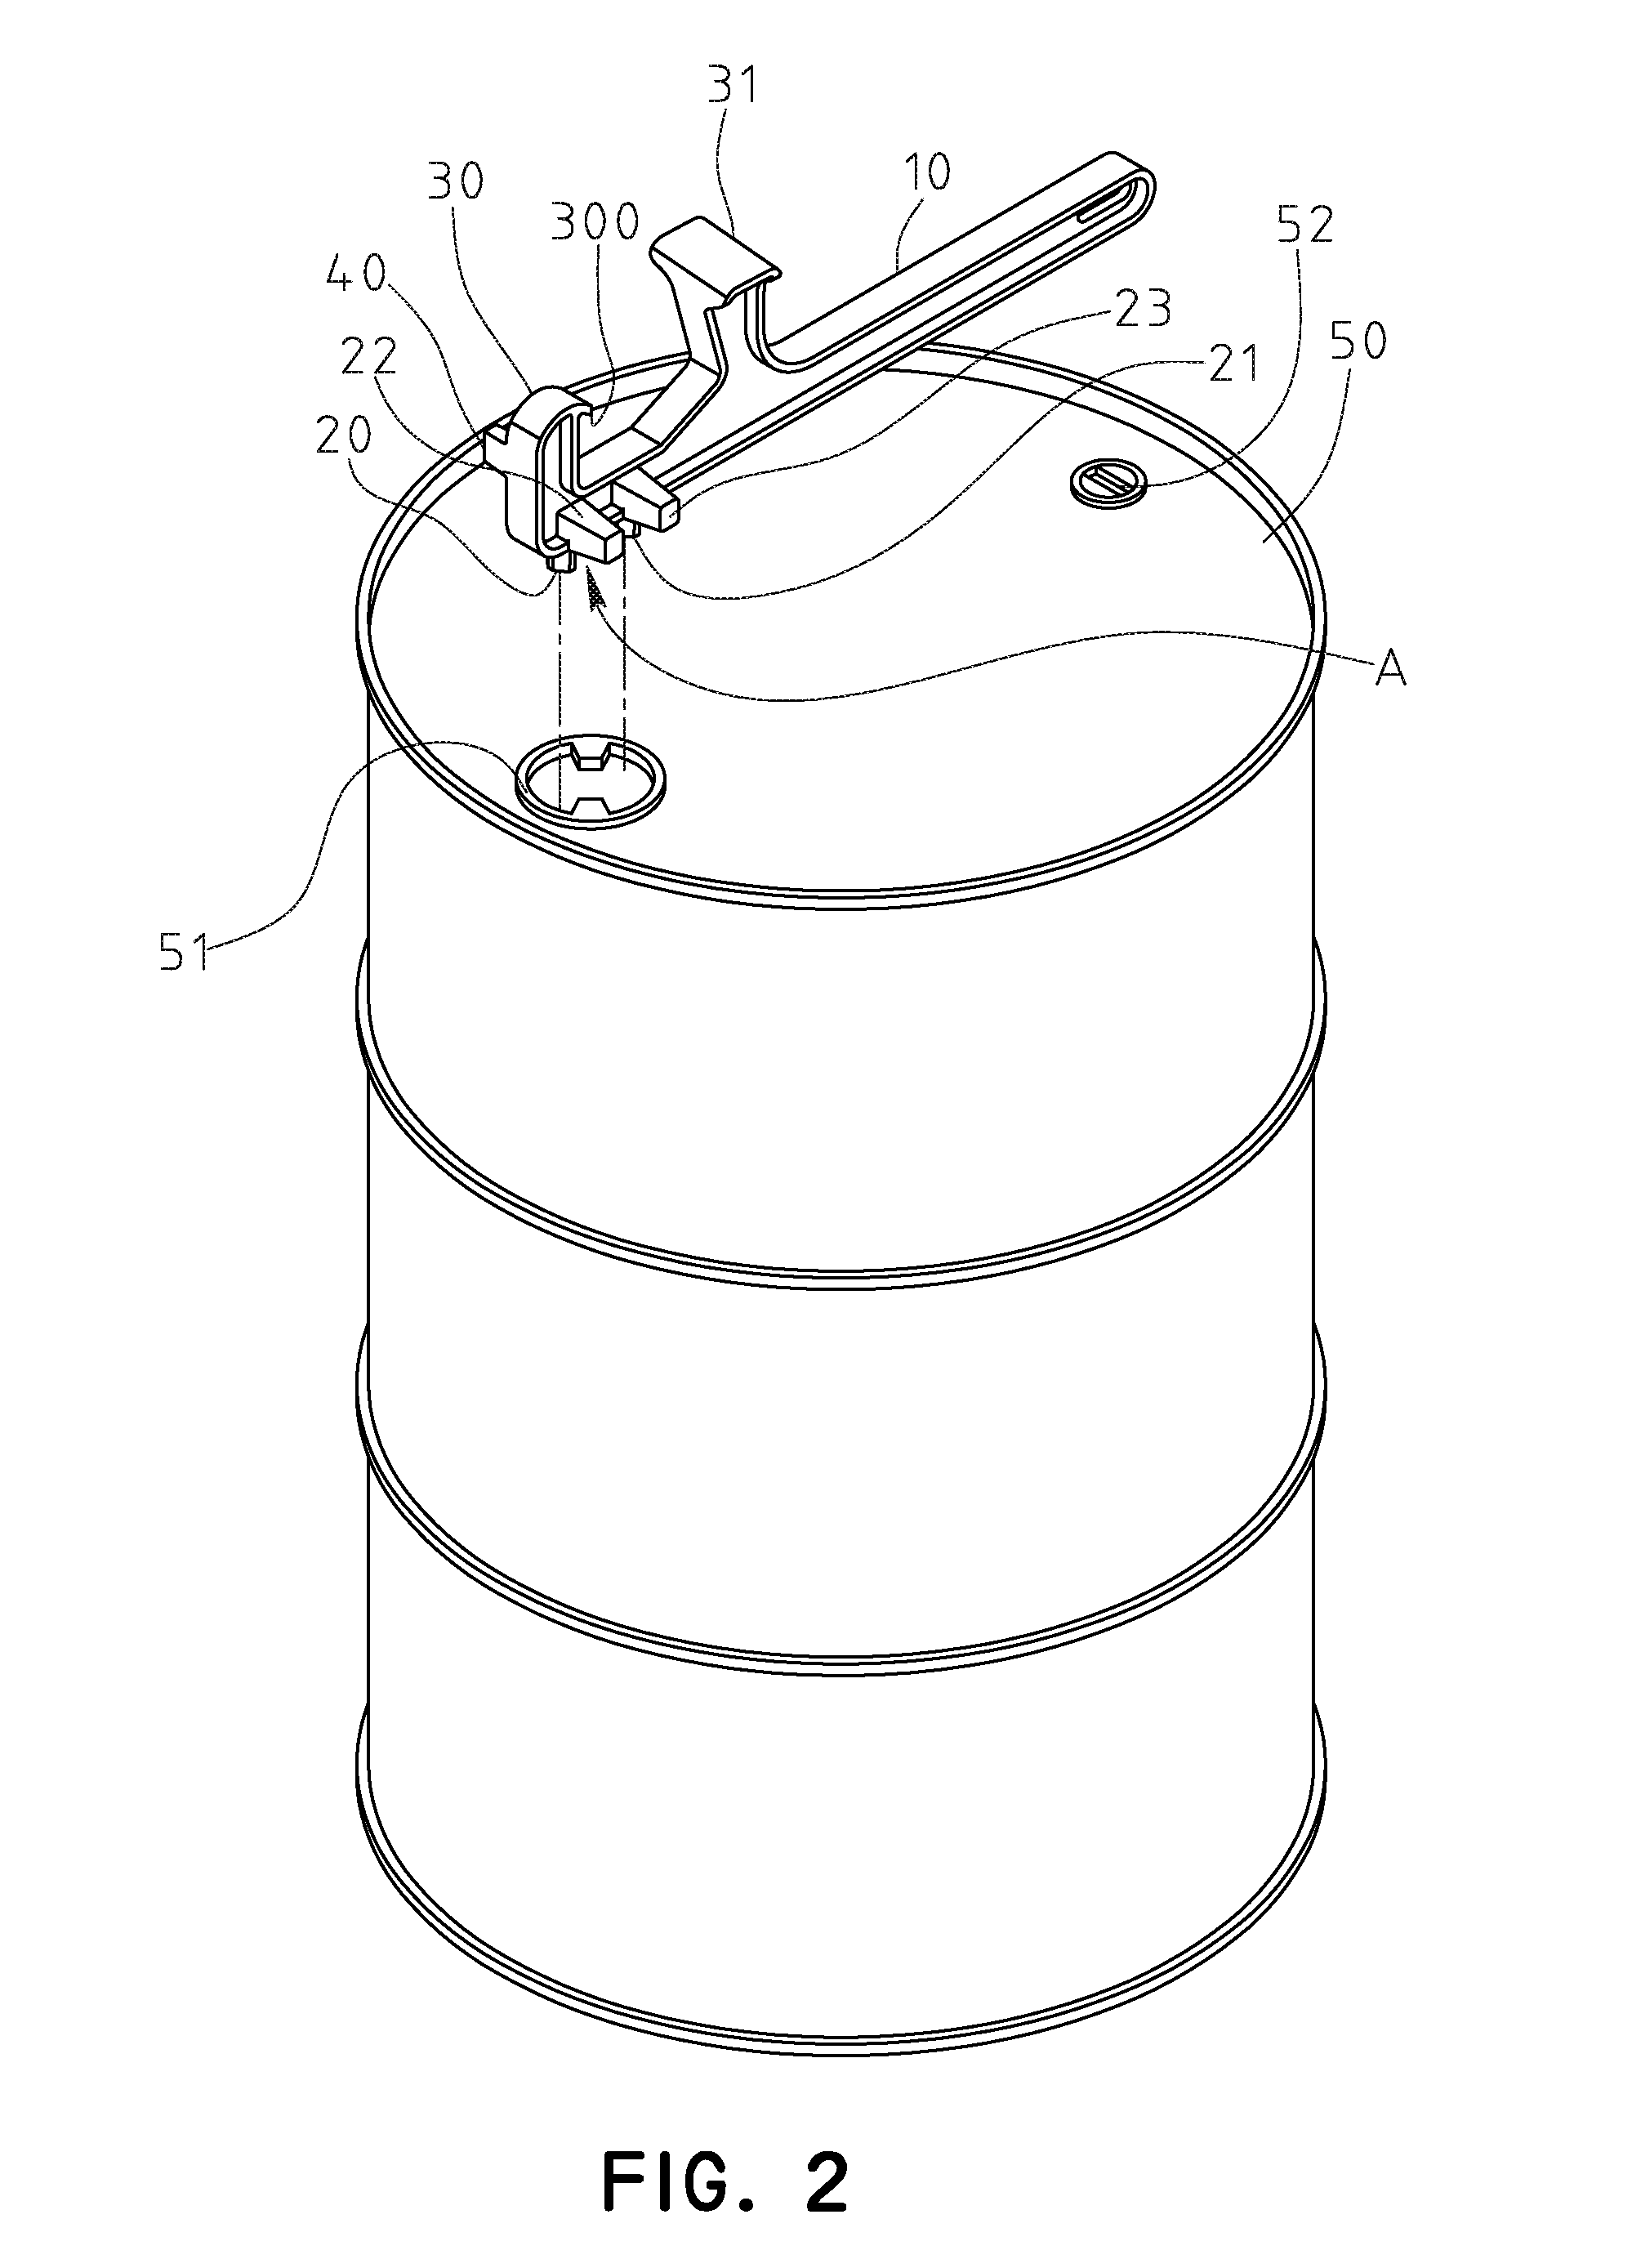 Universal barrel opener